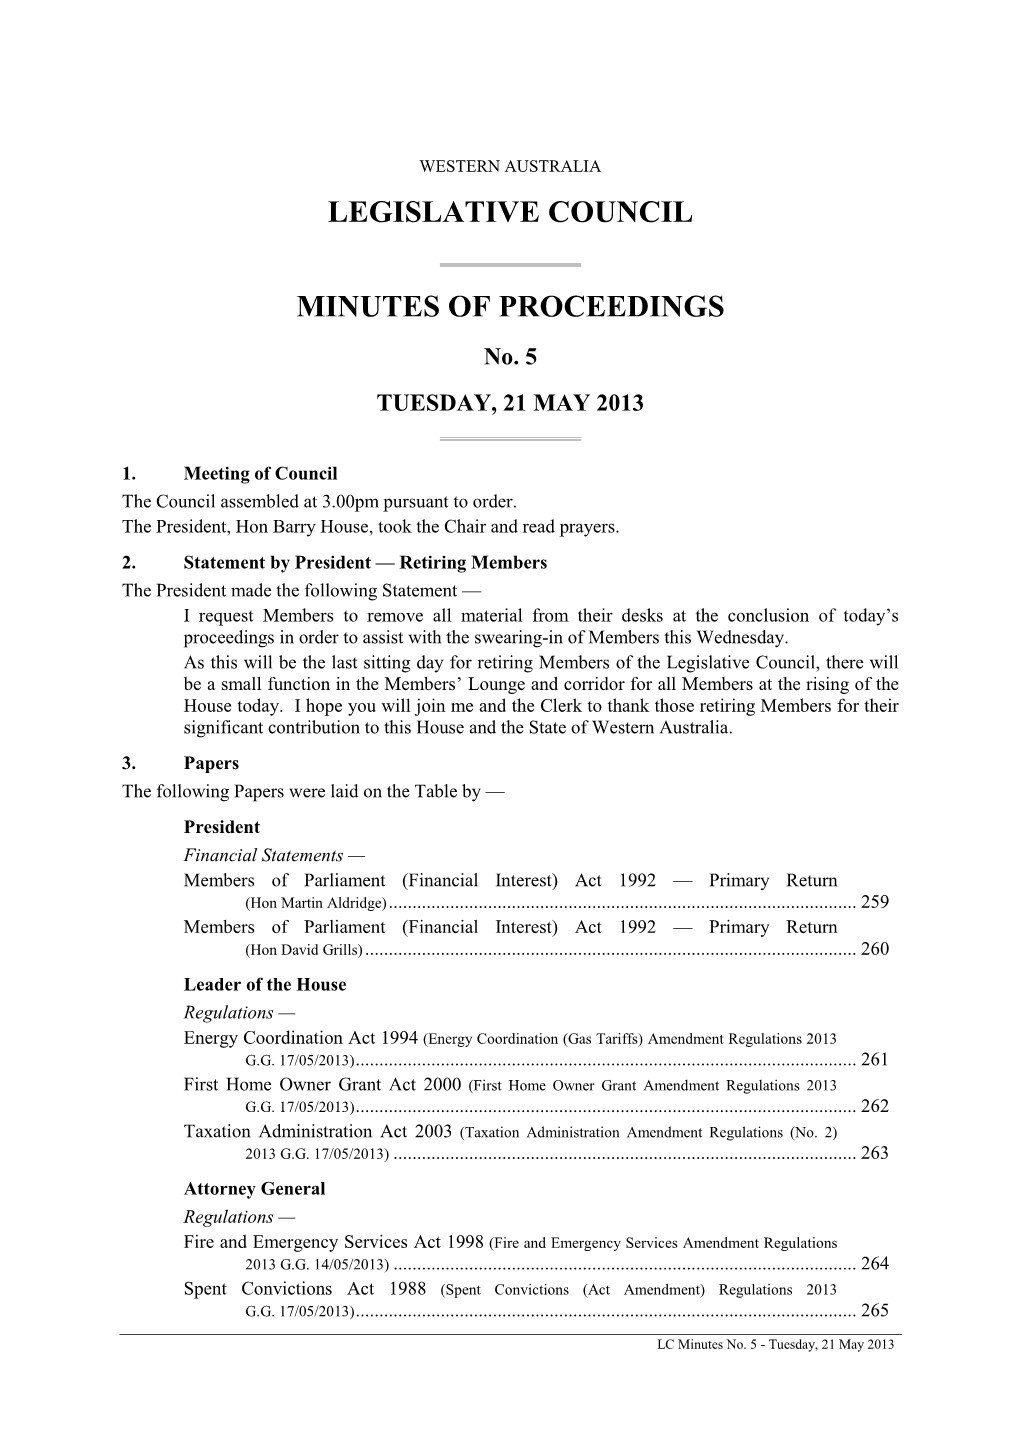 Legislative Council Minutes of Proceedings